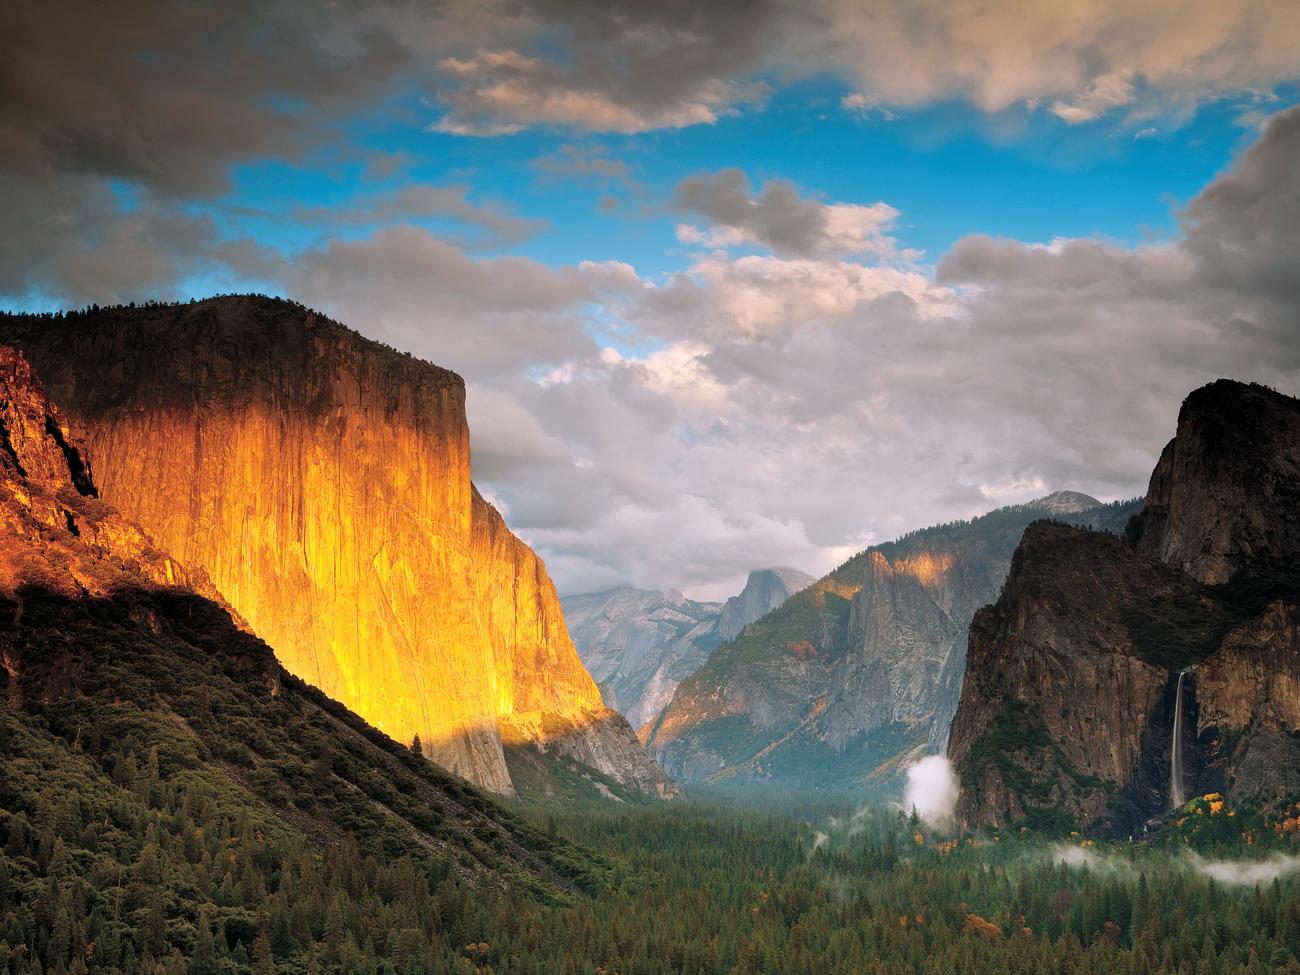 Happy 125th birthday, Yosemite!